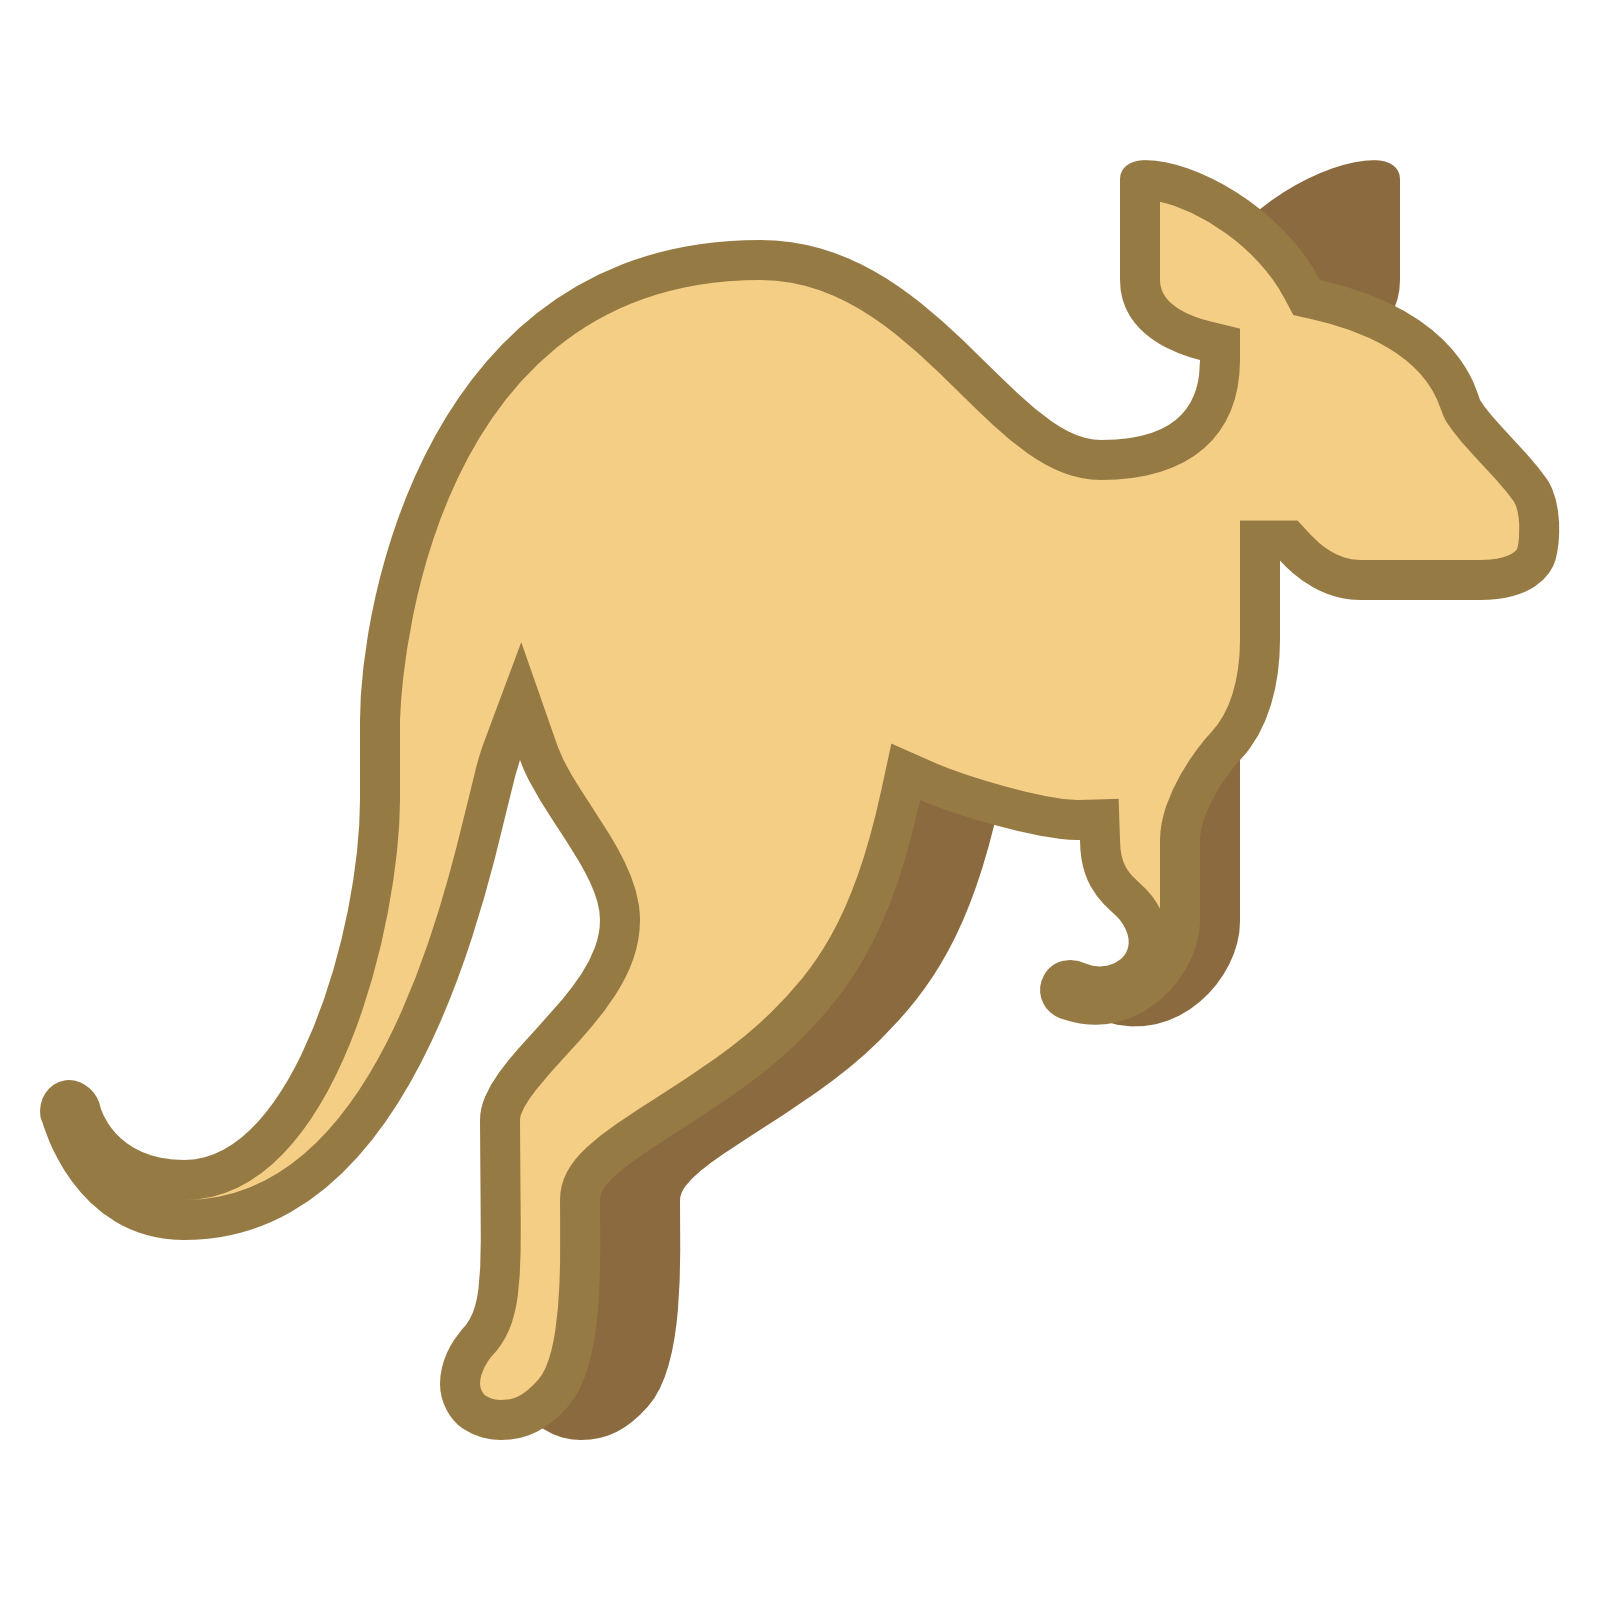 Similar Kangaroo PNG Image